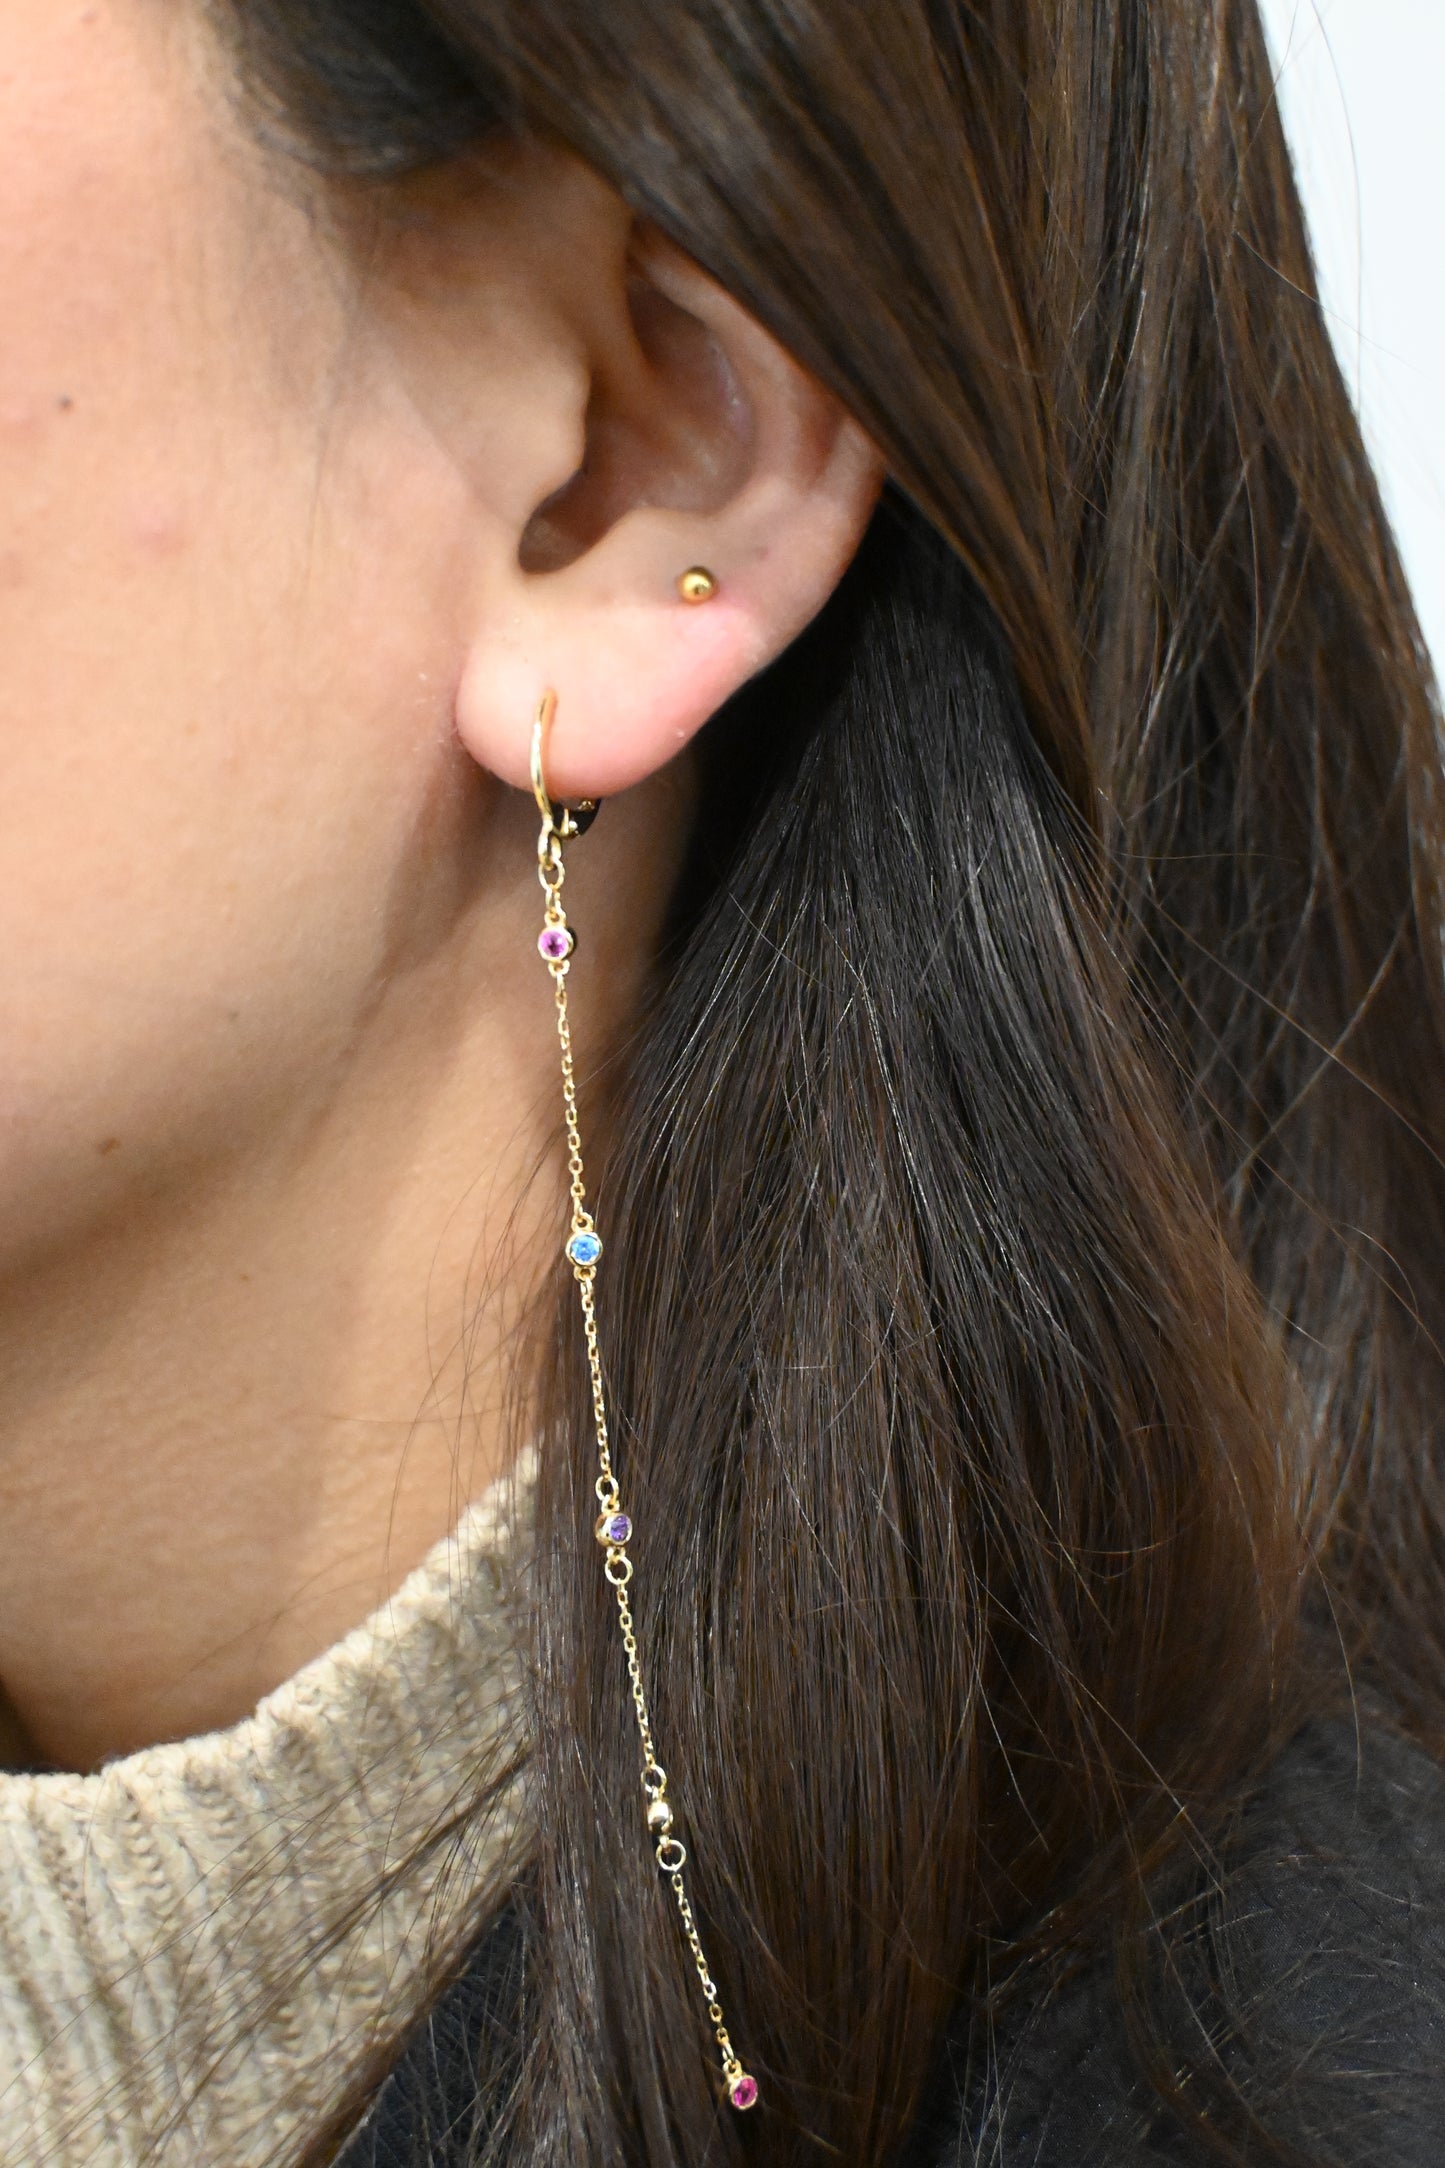 Lunar Droplet earrings